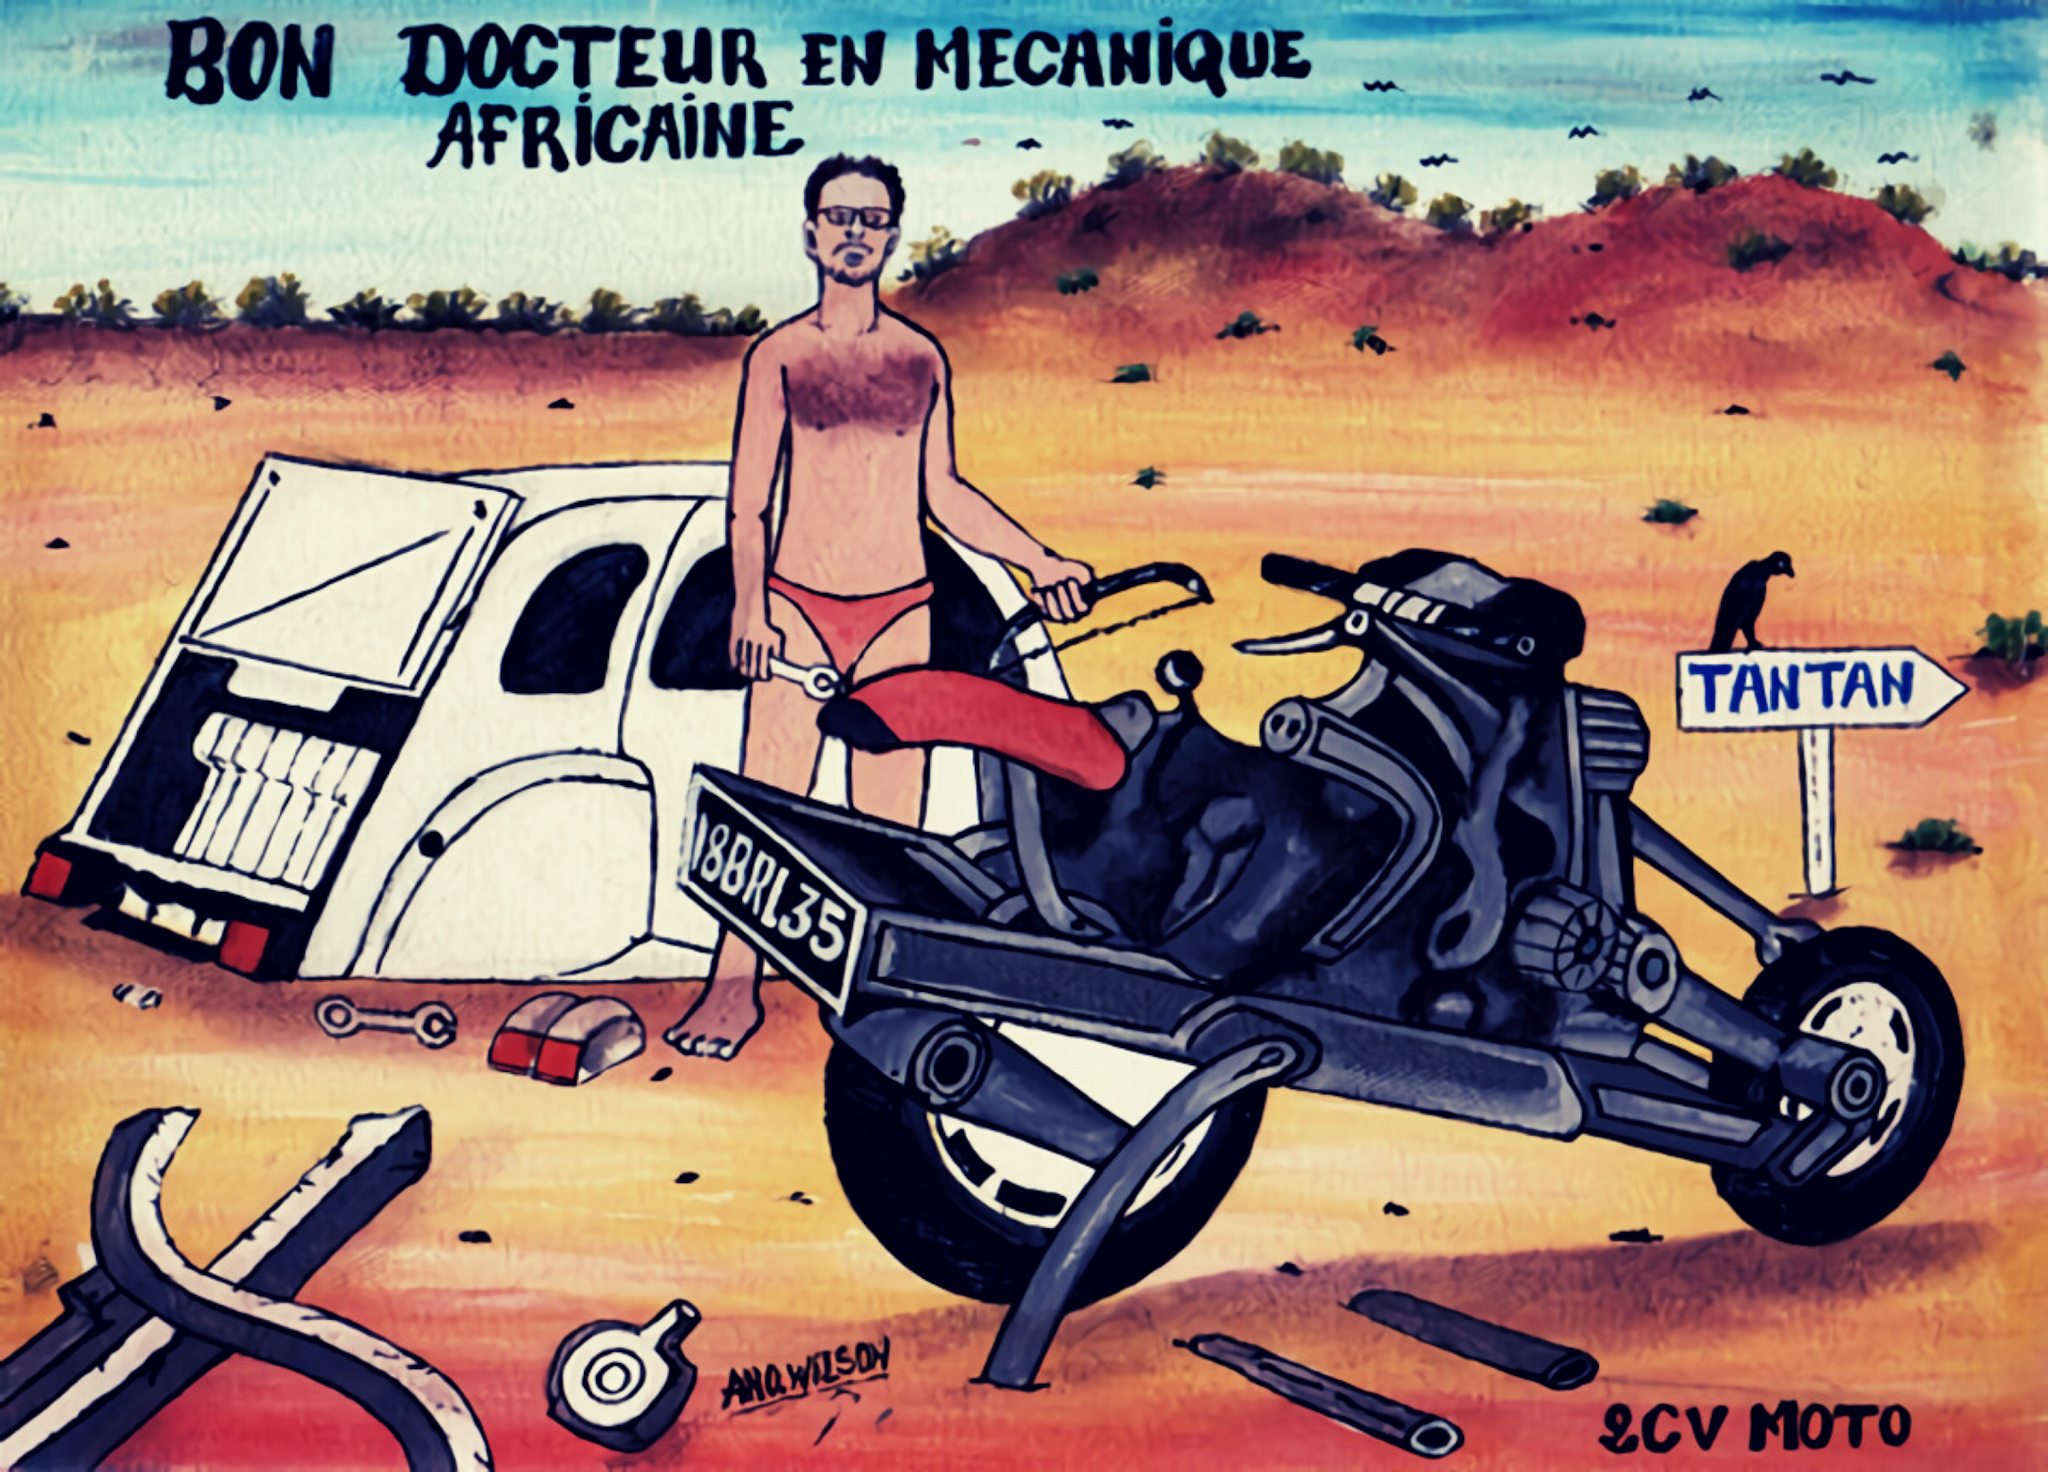 가치 있는 무모한 도전, 고장난 차를 오토바이로 개조해 사막을 탈출한 남자의 이야기